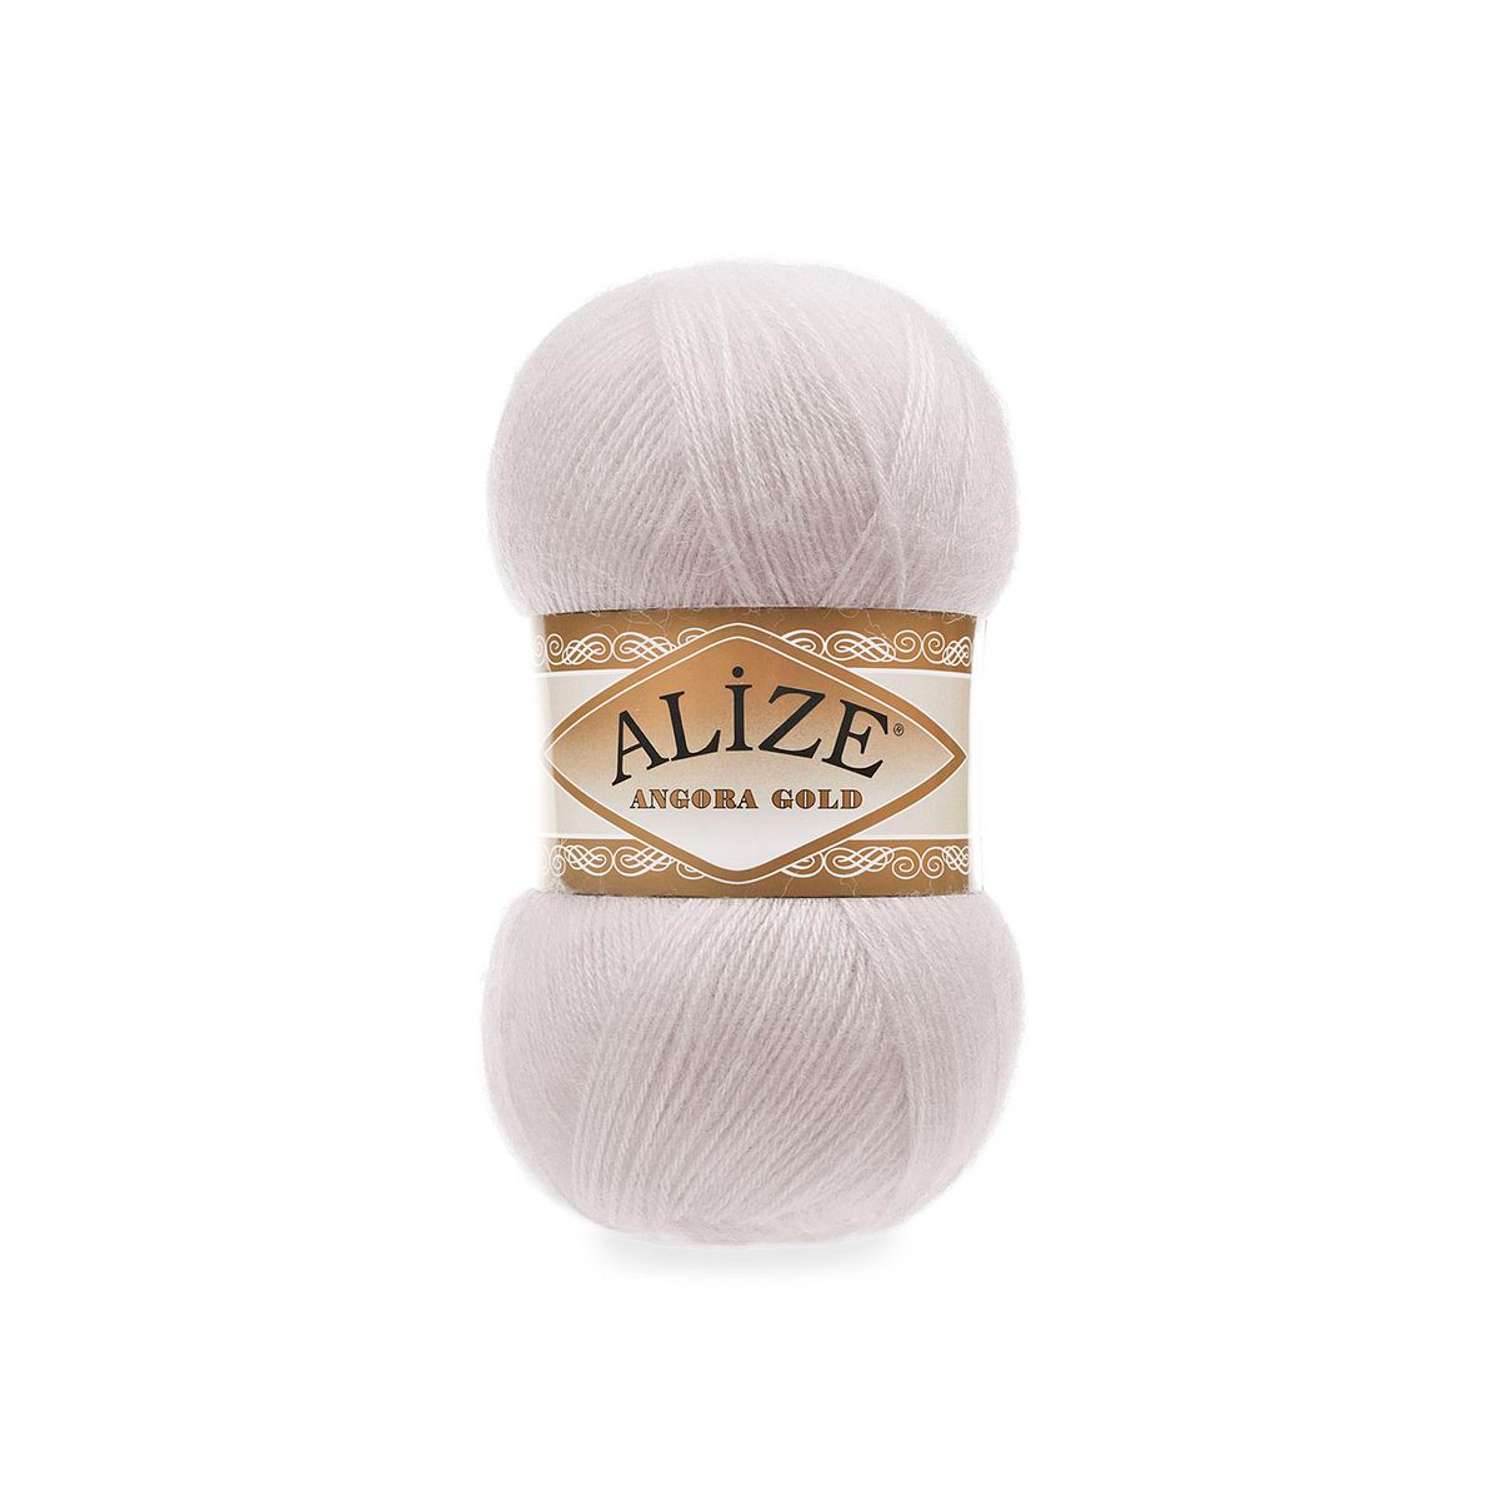 Пряжа Alize мягкая теплая для шарфов кардиганов Angora Gold 100 гр 550 м 5 мотков 168 белая зима - фото 6